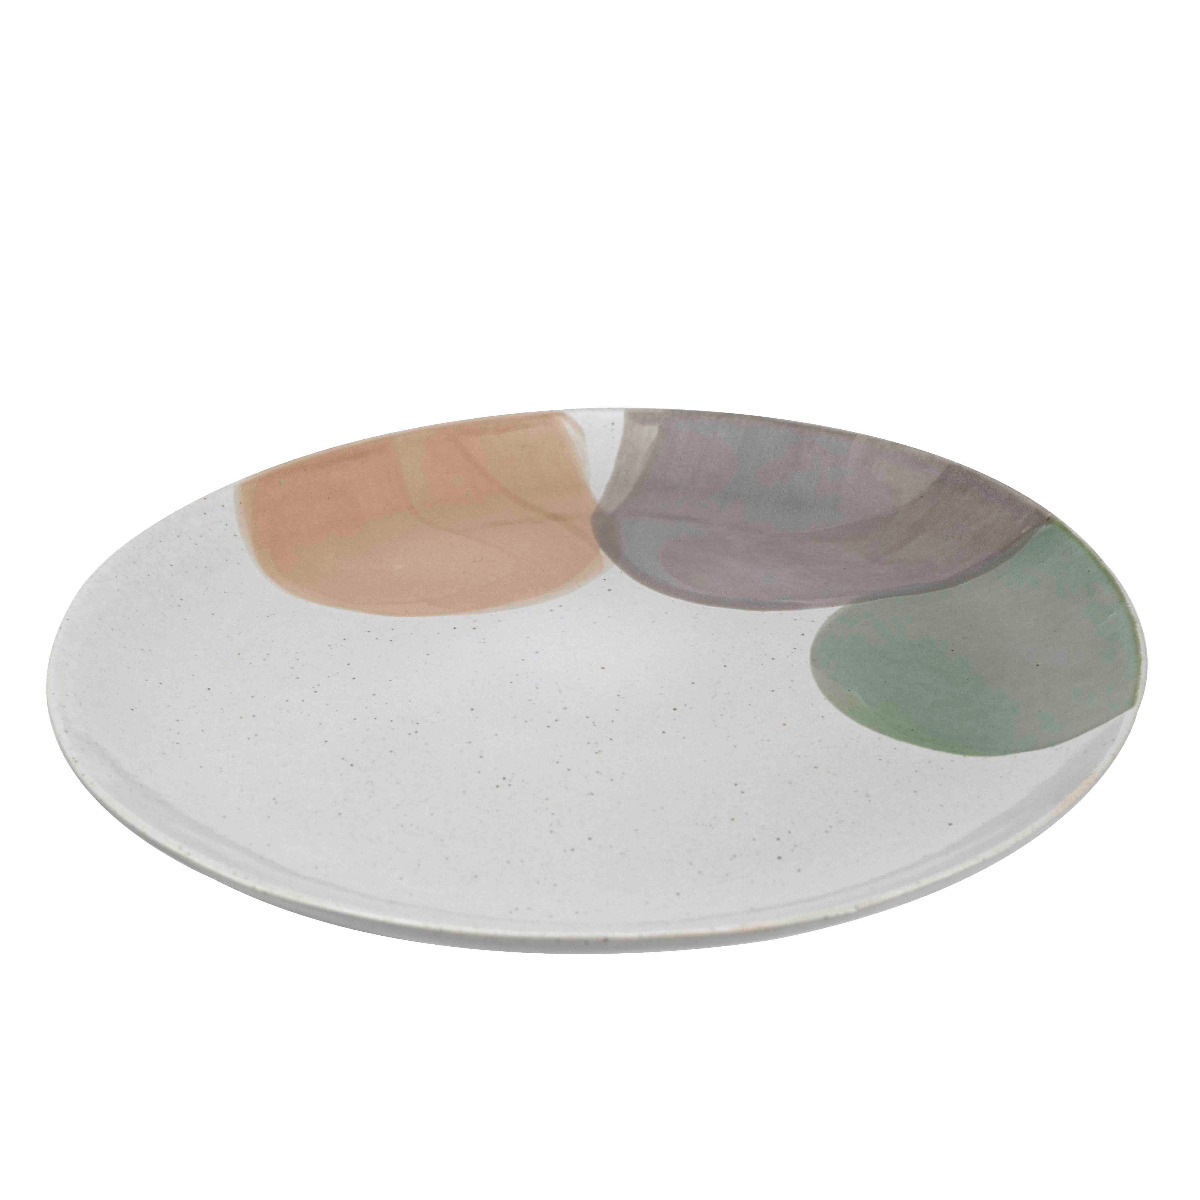 Ceramic serving plate 26cm